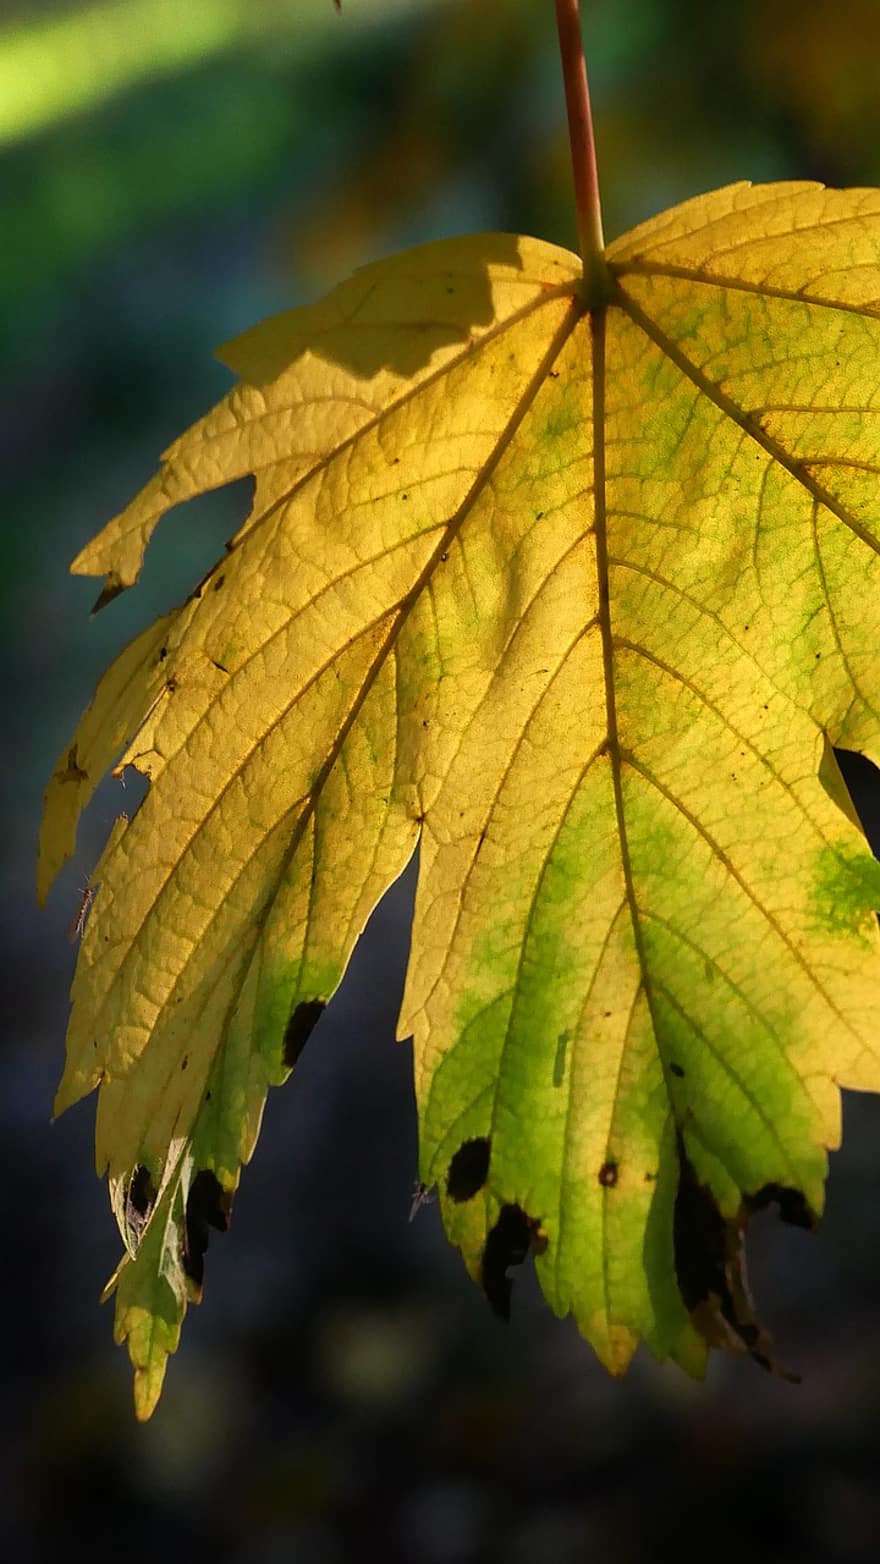 лист, лес, падать, свет, осень, желтый, время года, дерево, крупный план, яркий цвет, фоны